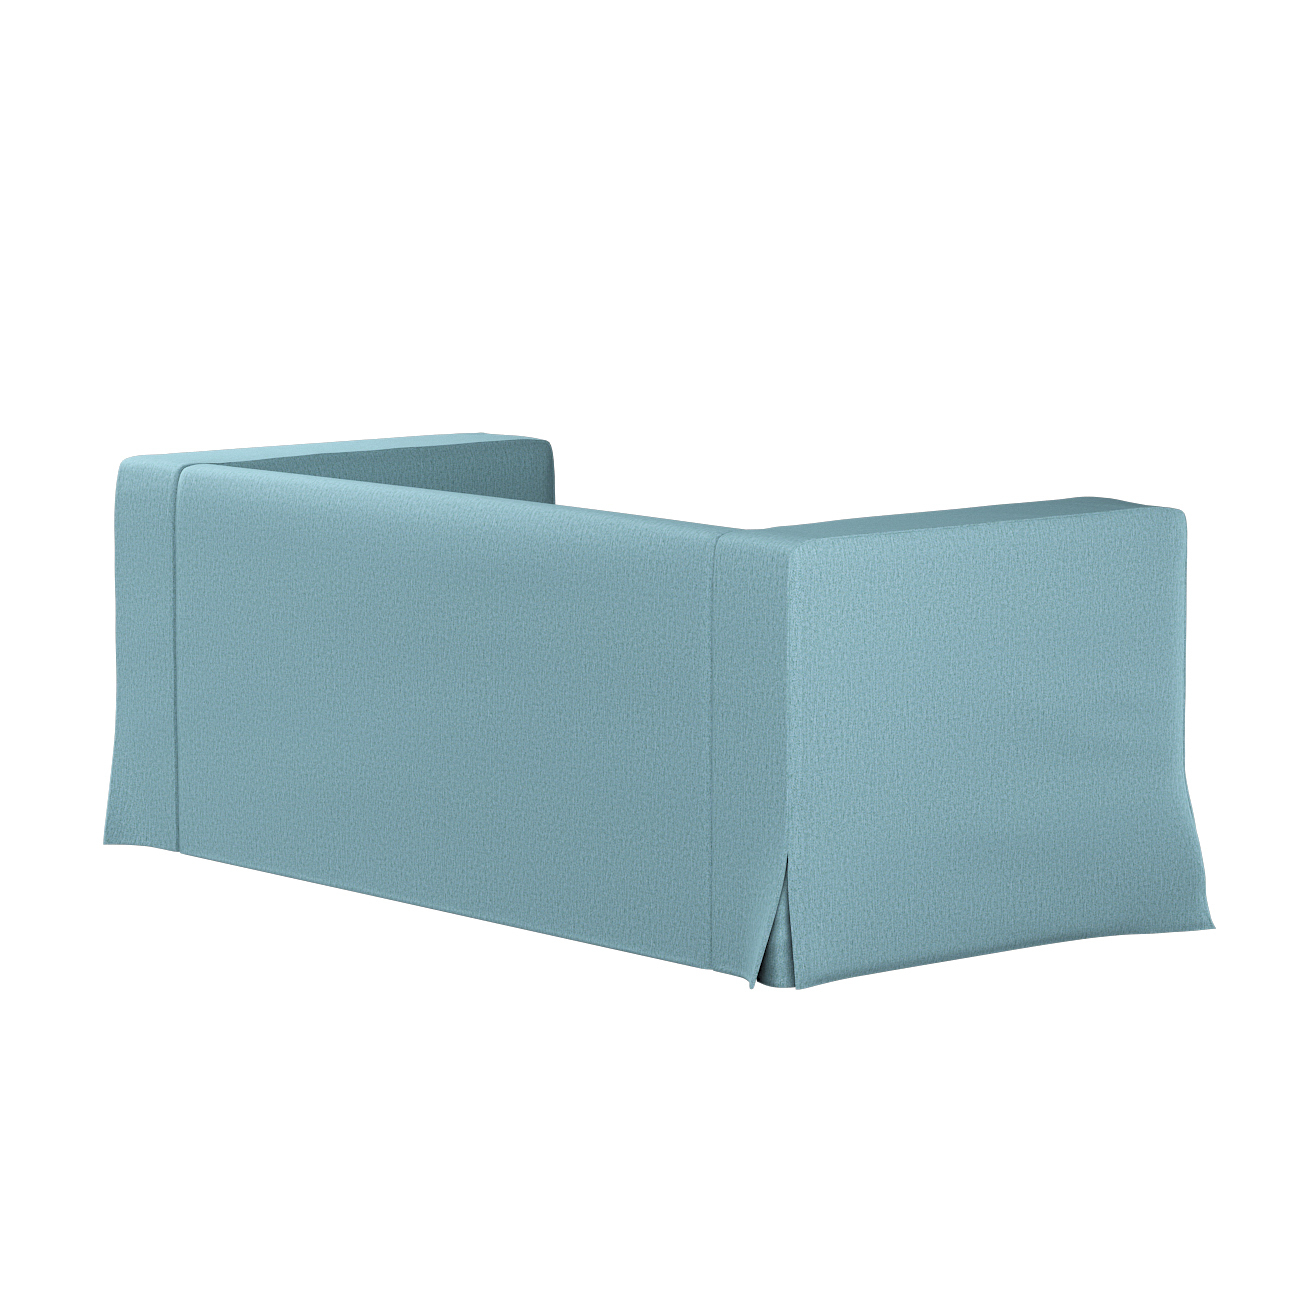 Bezug für Klippan 2-Sitzer Sofa, lang mit Kellerfalte, blau, Klippan 2-er, günstig online kaufen